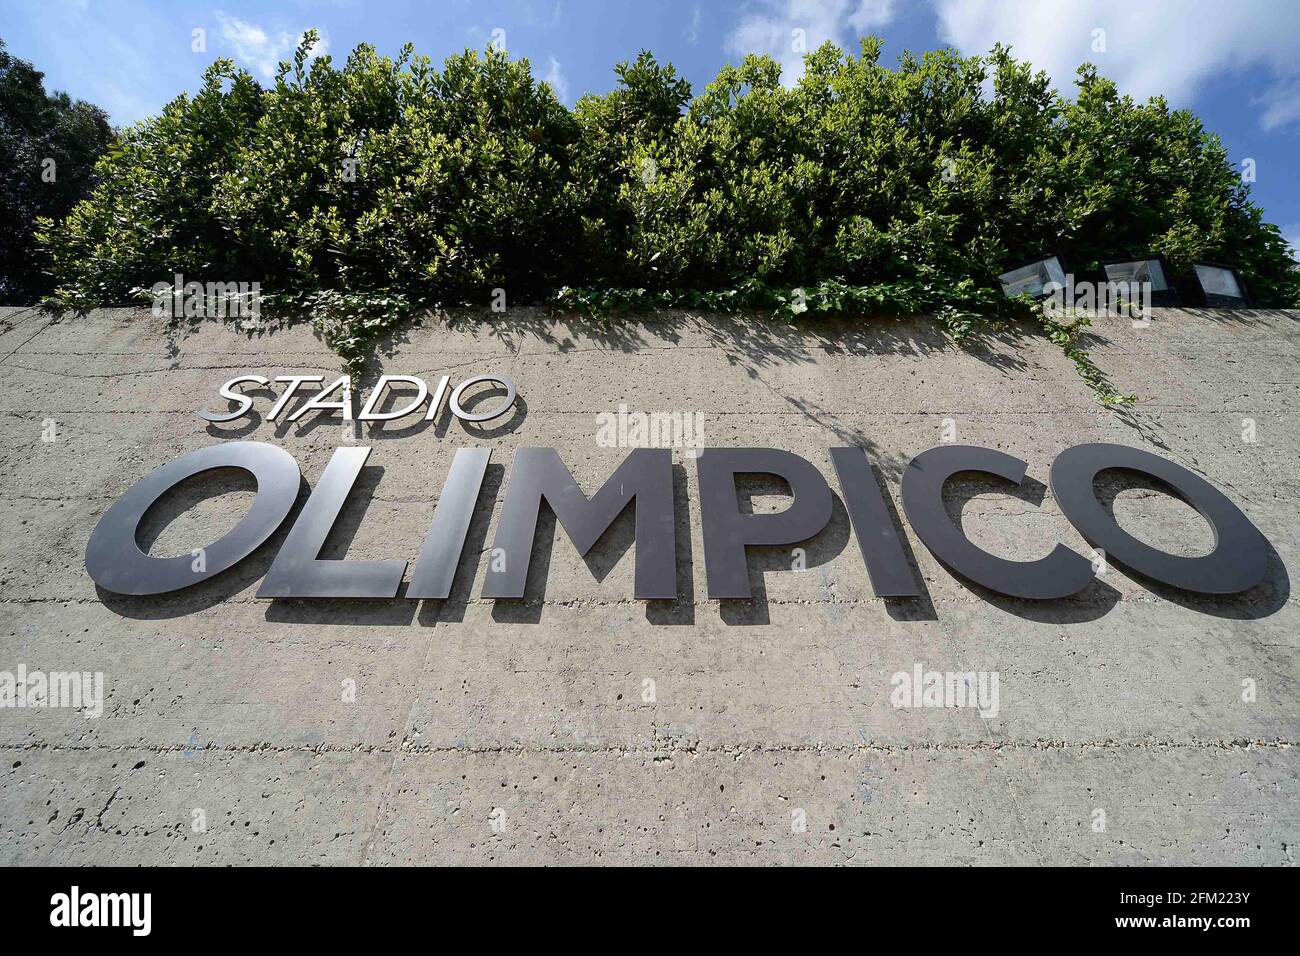 Foto IPP/Roberto Ramaccia Roma 5/05/2021  Stadio Olimpico pre Euro 2020-2021 Nella foto la nuova insegna dello stadio olimpico Italy Photo Press - Wor Stock Photo